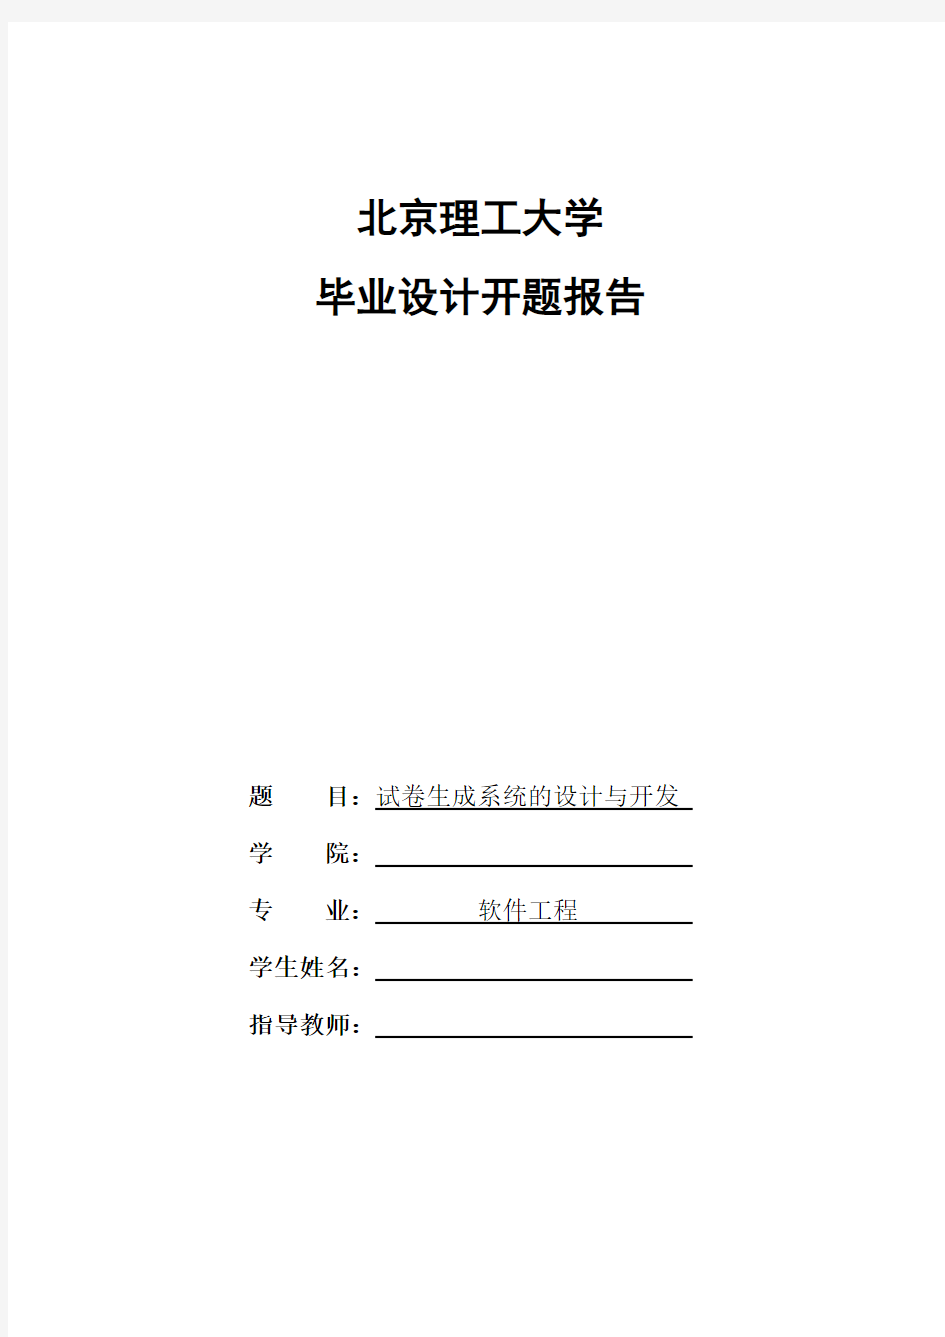 北京理工大学毕业设计(论文)开题报告